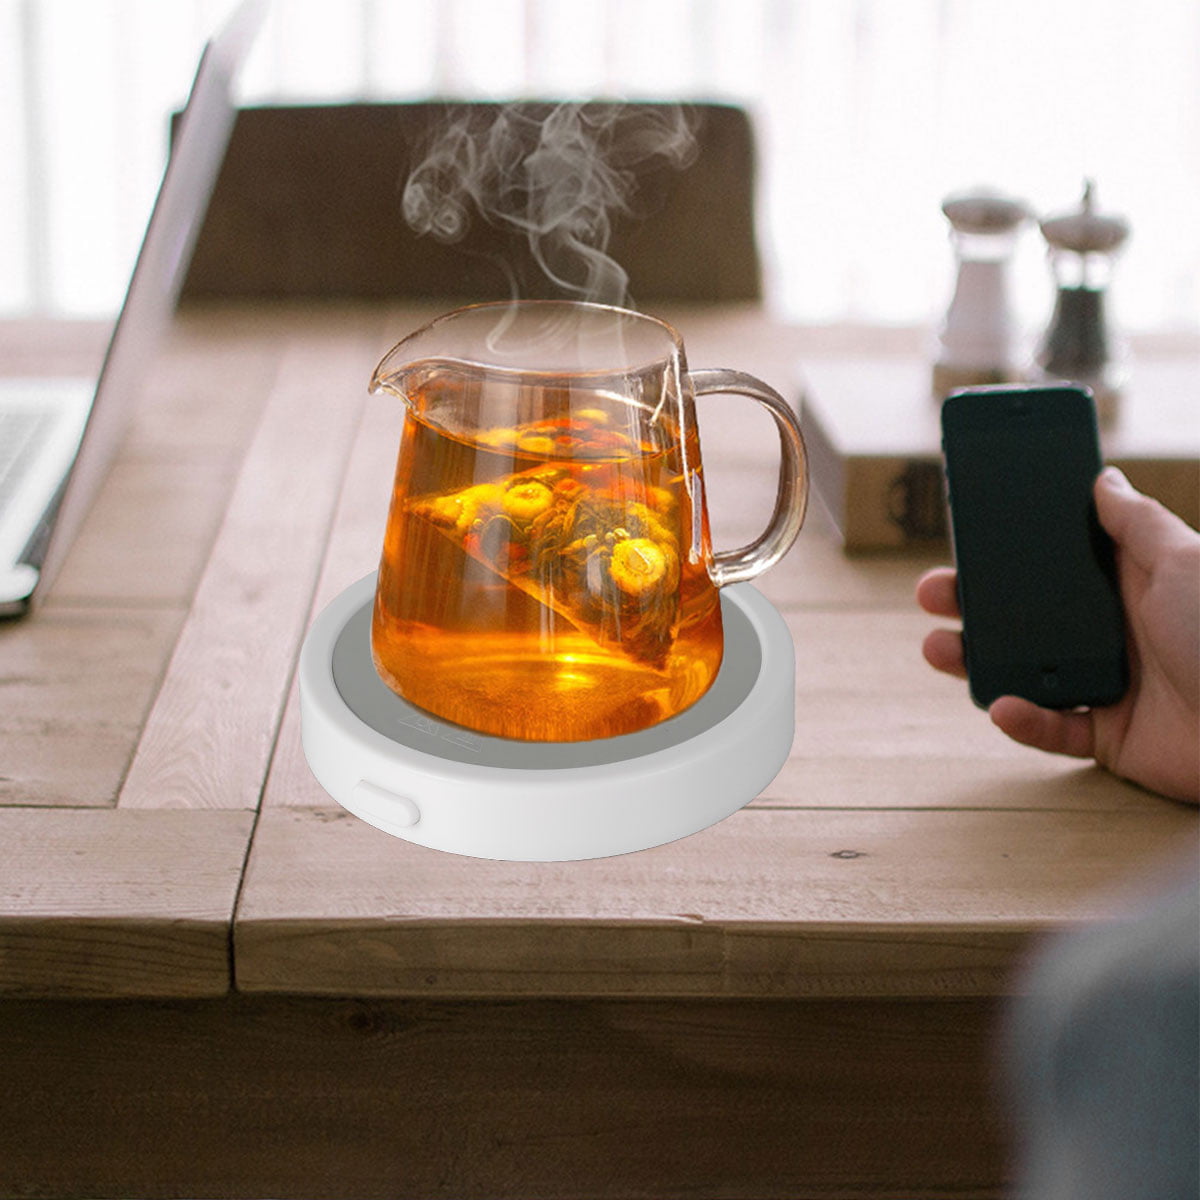 USB Cofee Mug Warmer Gadget Thin Cup-Pad Coffee Tea Drink USB